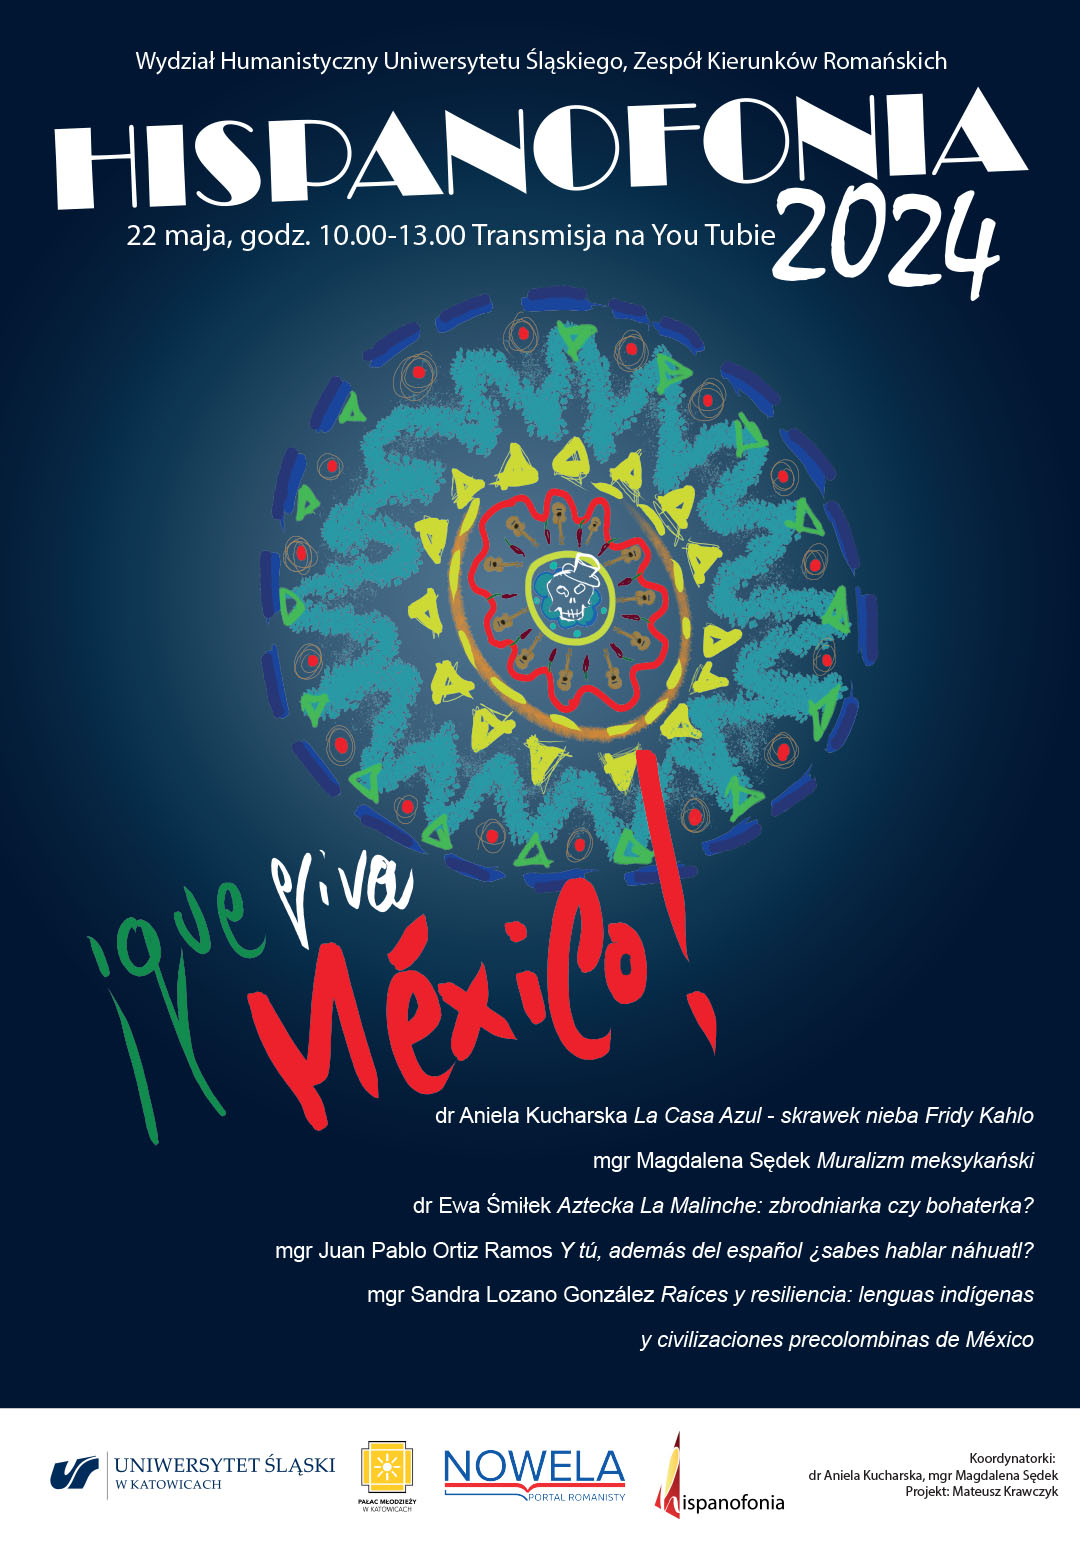 Plakat promujący hispanofonię 2024. Plakat wykonany w stylu meksykańskim.